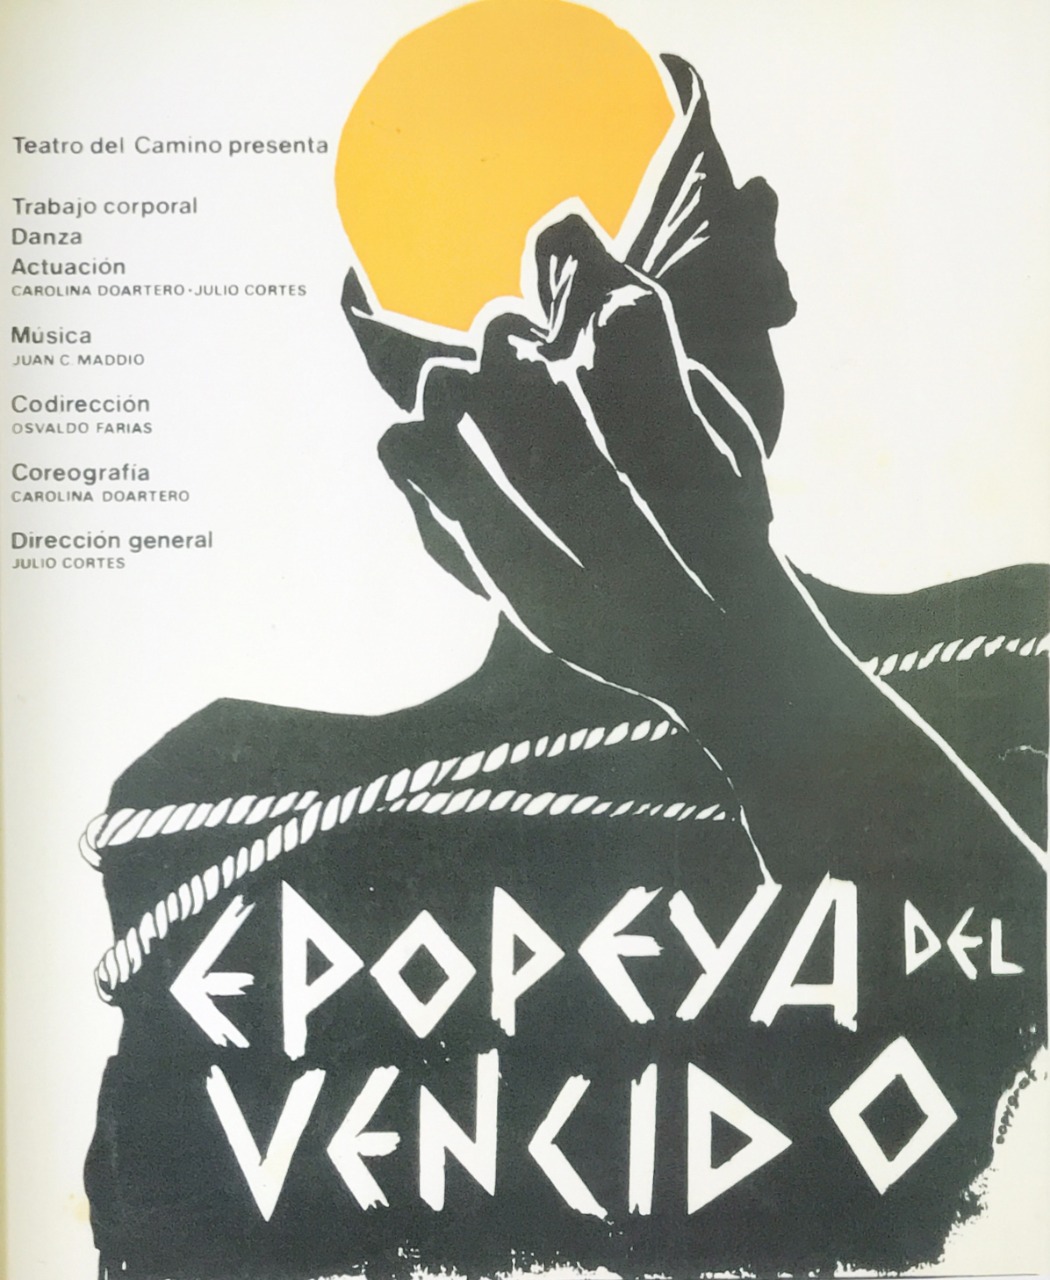 Poster Epopeya del Vencido